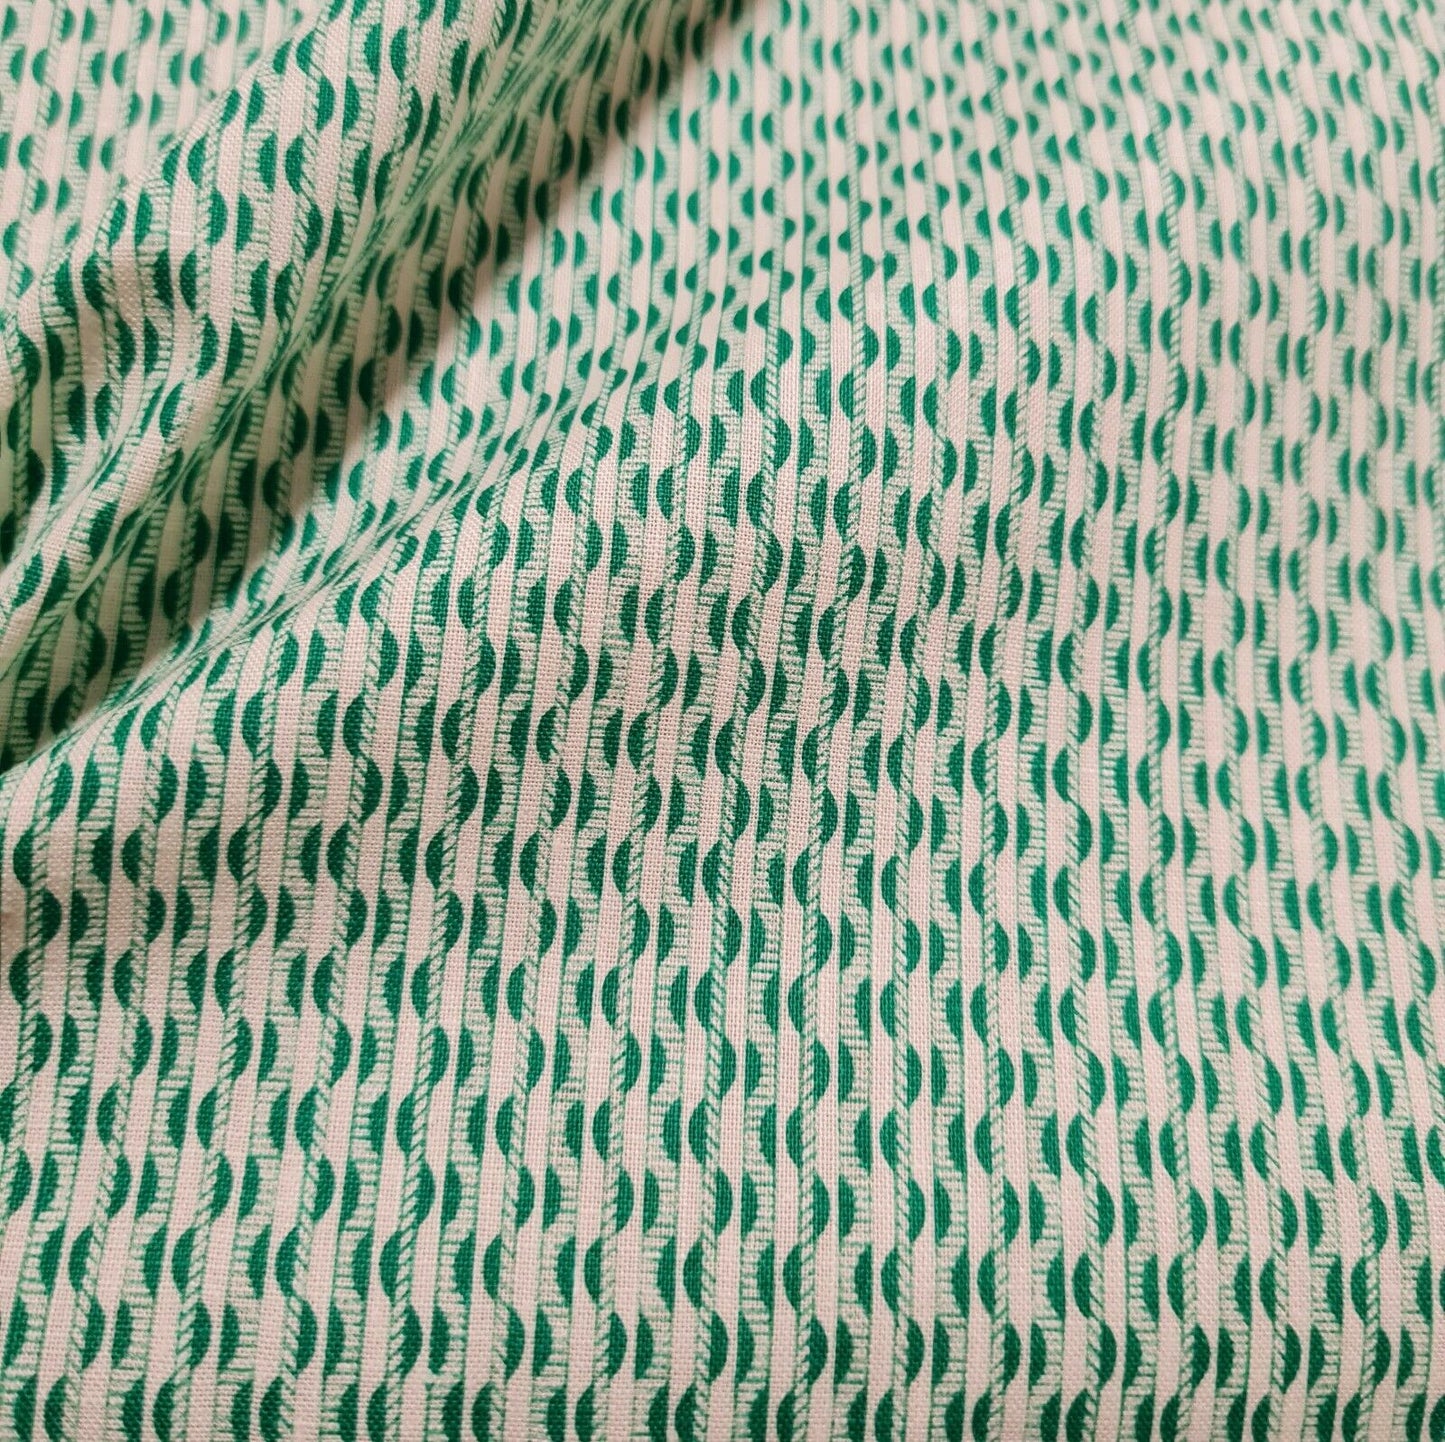 Printed Cotton Fabric 43" Wide Non-Stretch